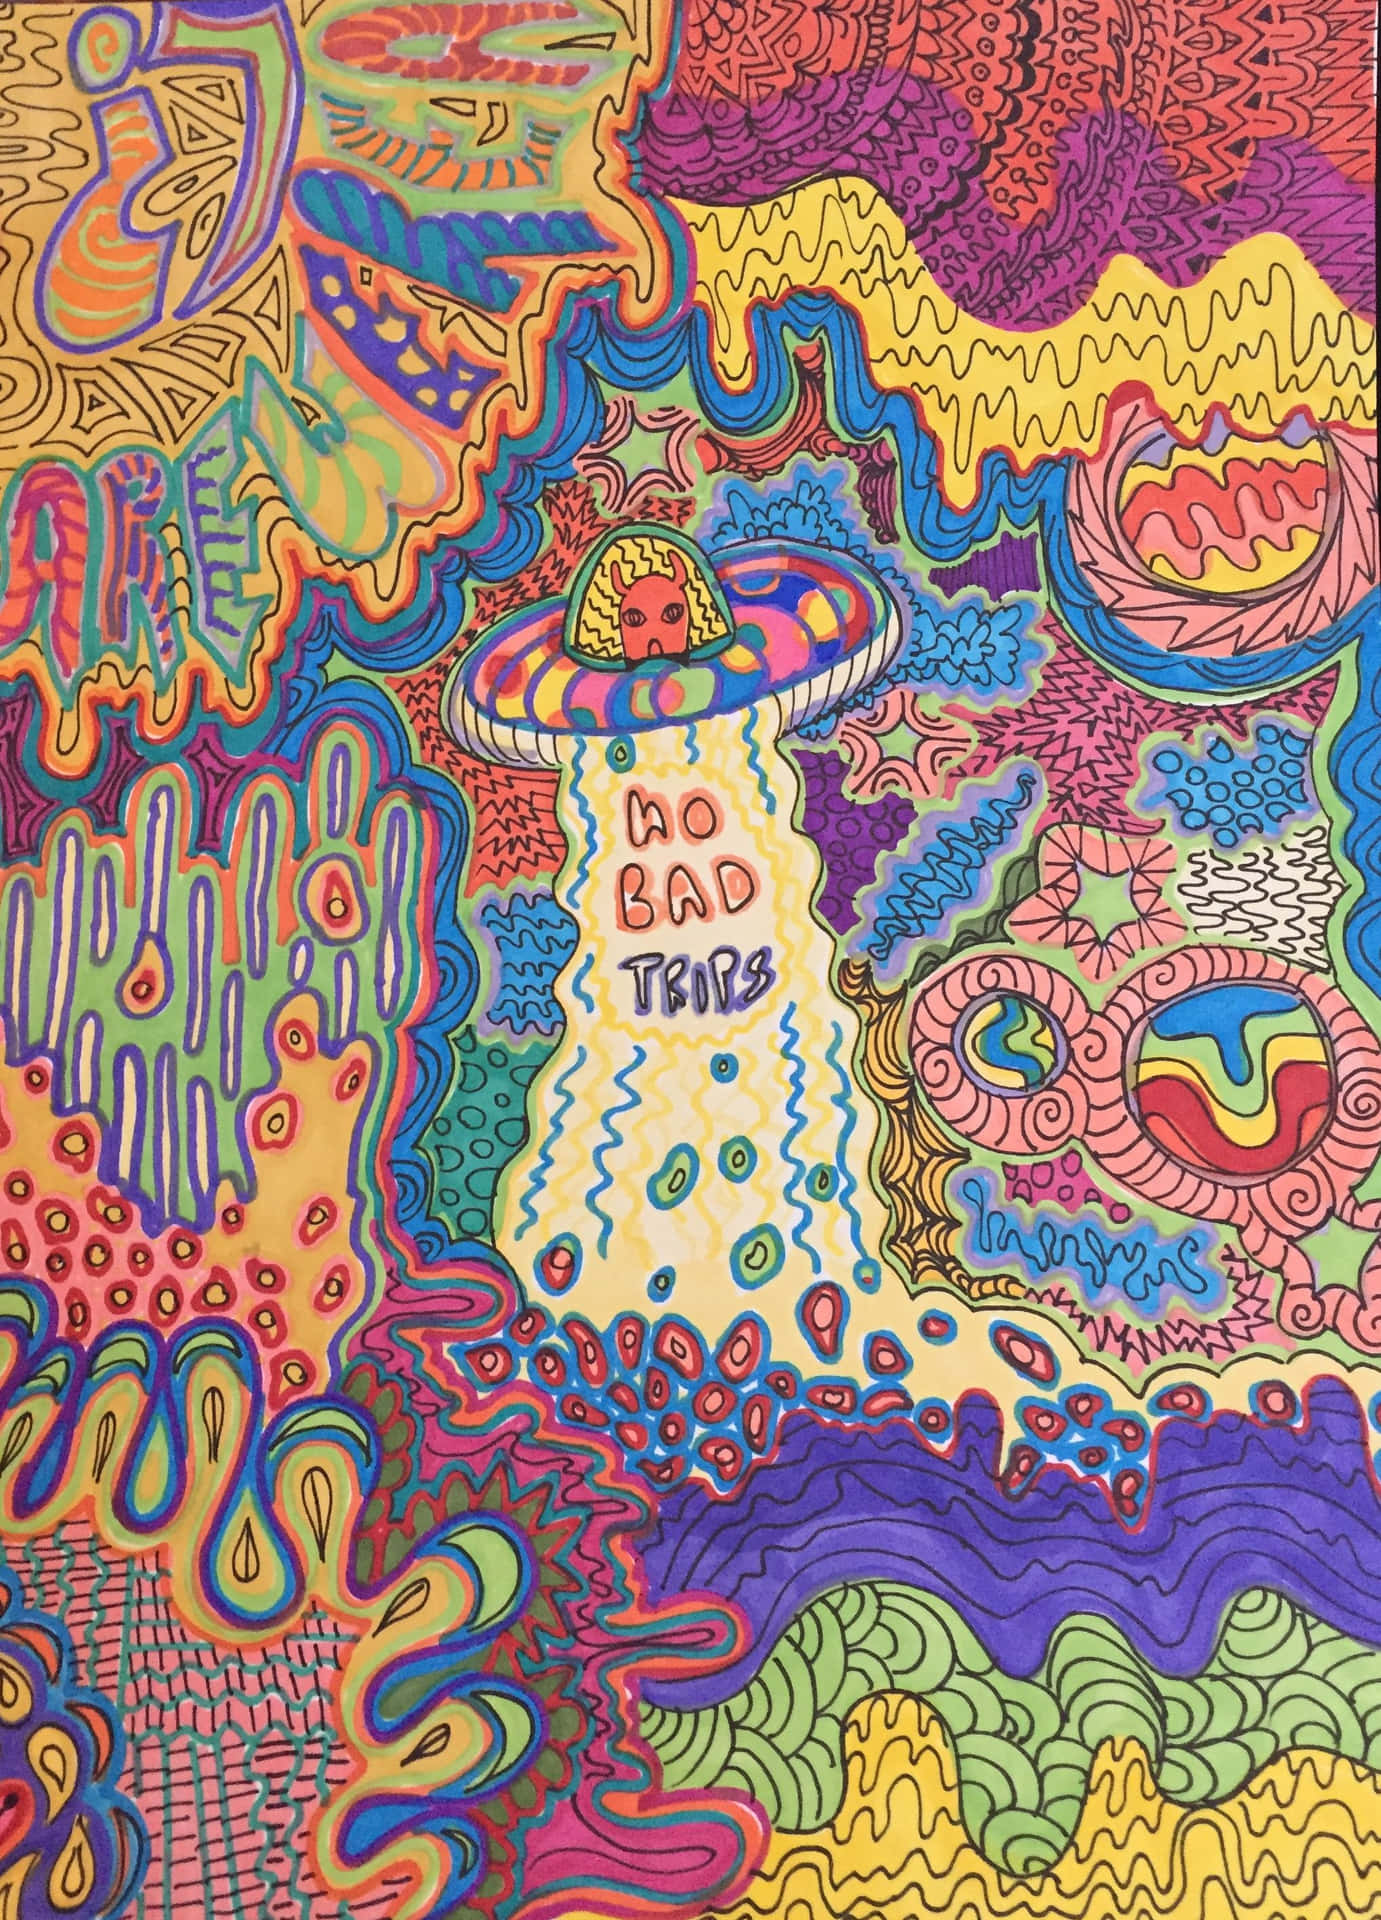 En psykedelisk vision af en frihedselskende trippende hippie. Wallpaper